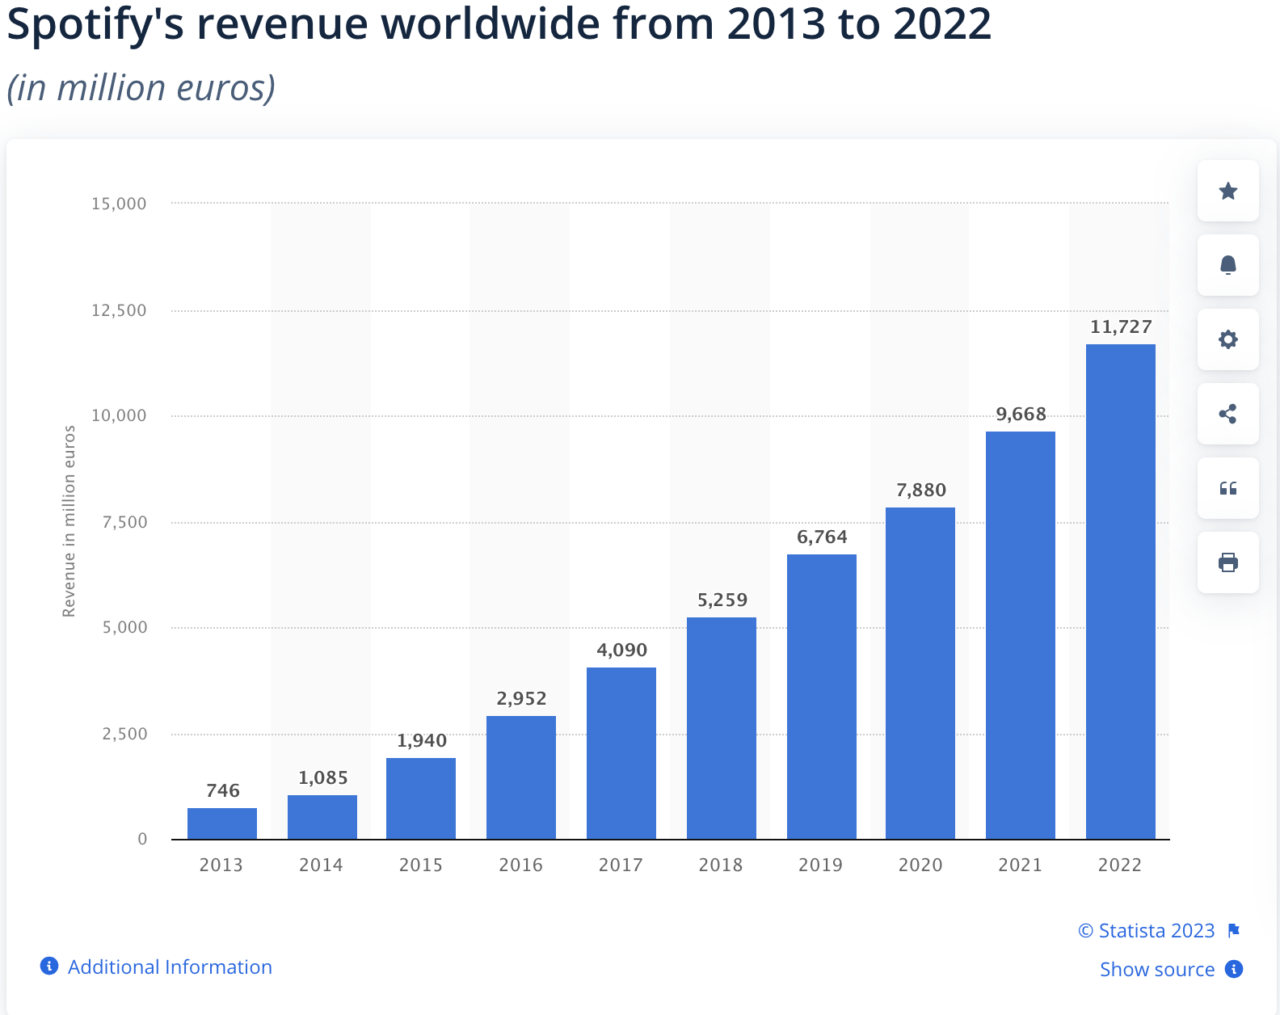 Wykres słupkowy przedstawiający roczne przychody Spotify na świecie od 2013 do 2022 roku w milionach euro. Przychody rosną z roku na rok, zaczynając od 746 milionów euro w 2013 roku, do 11 727 milionów euro w 2022 roku.